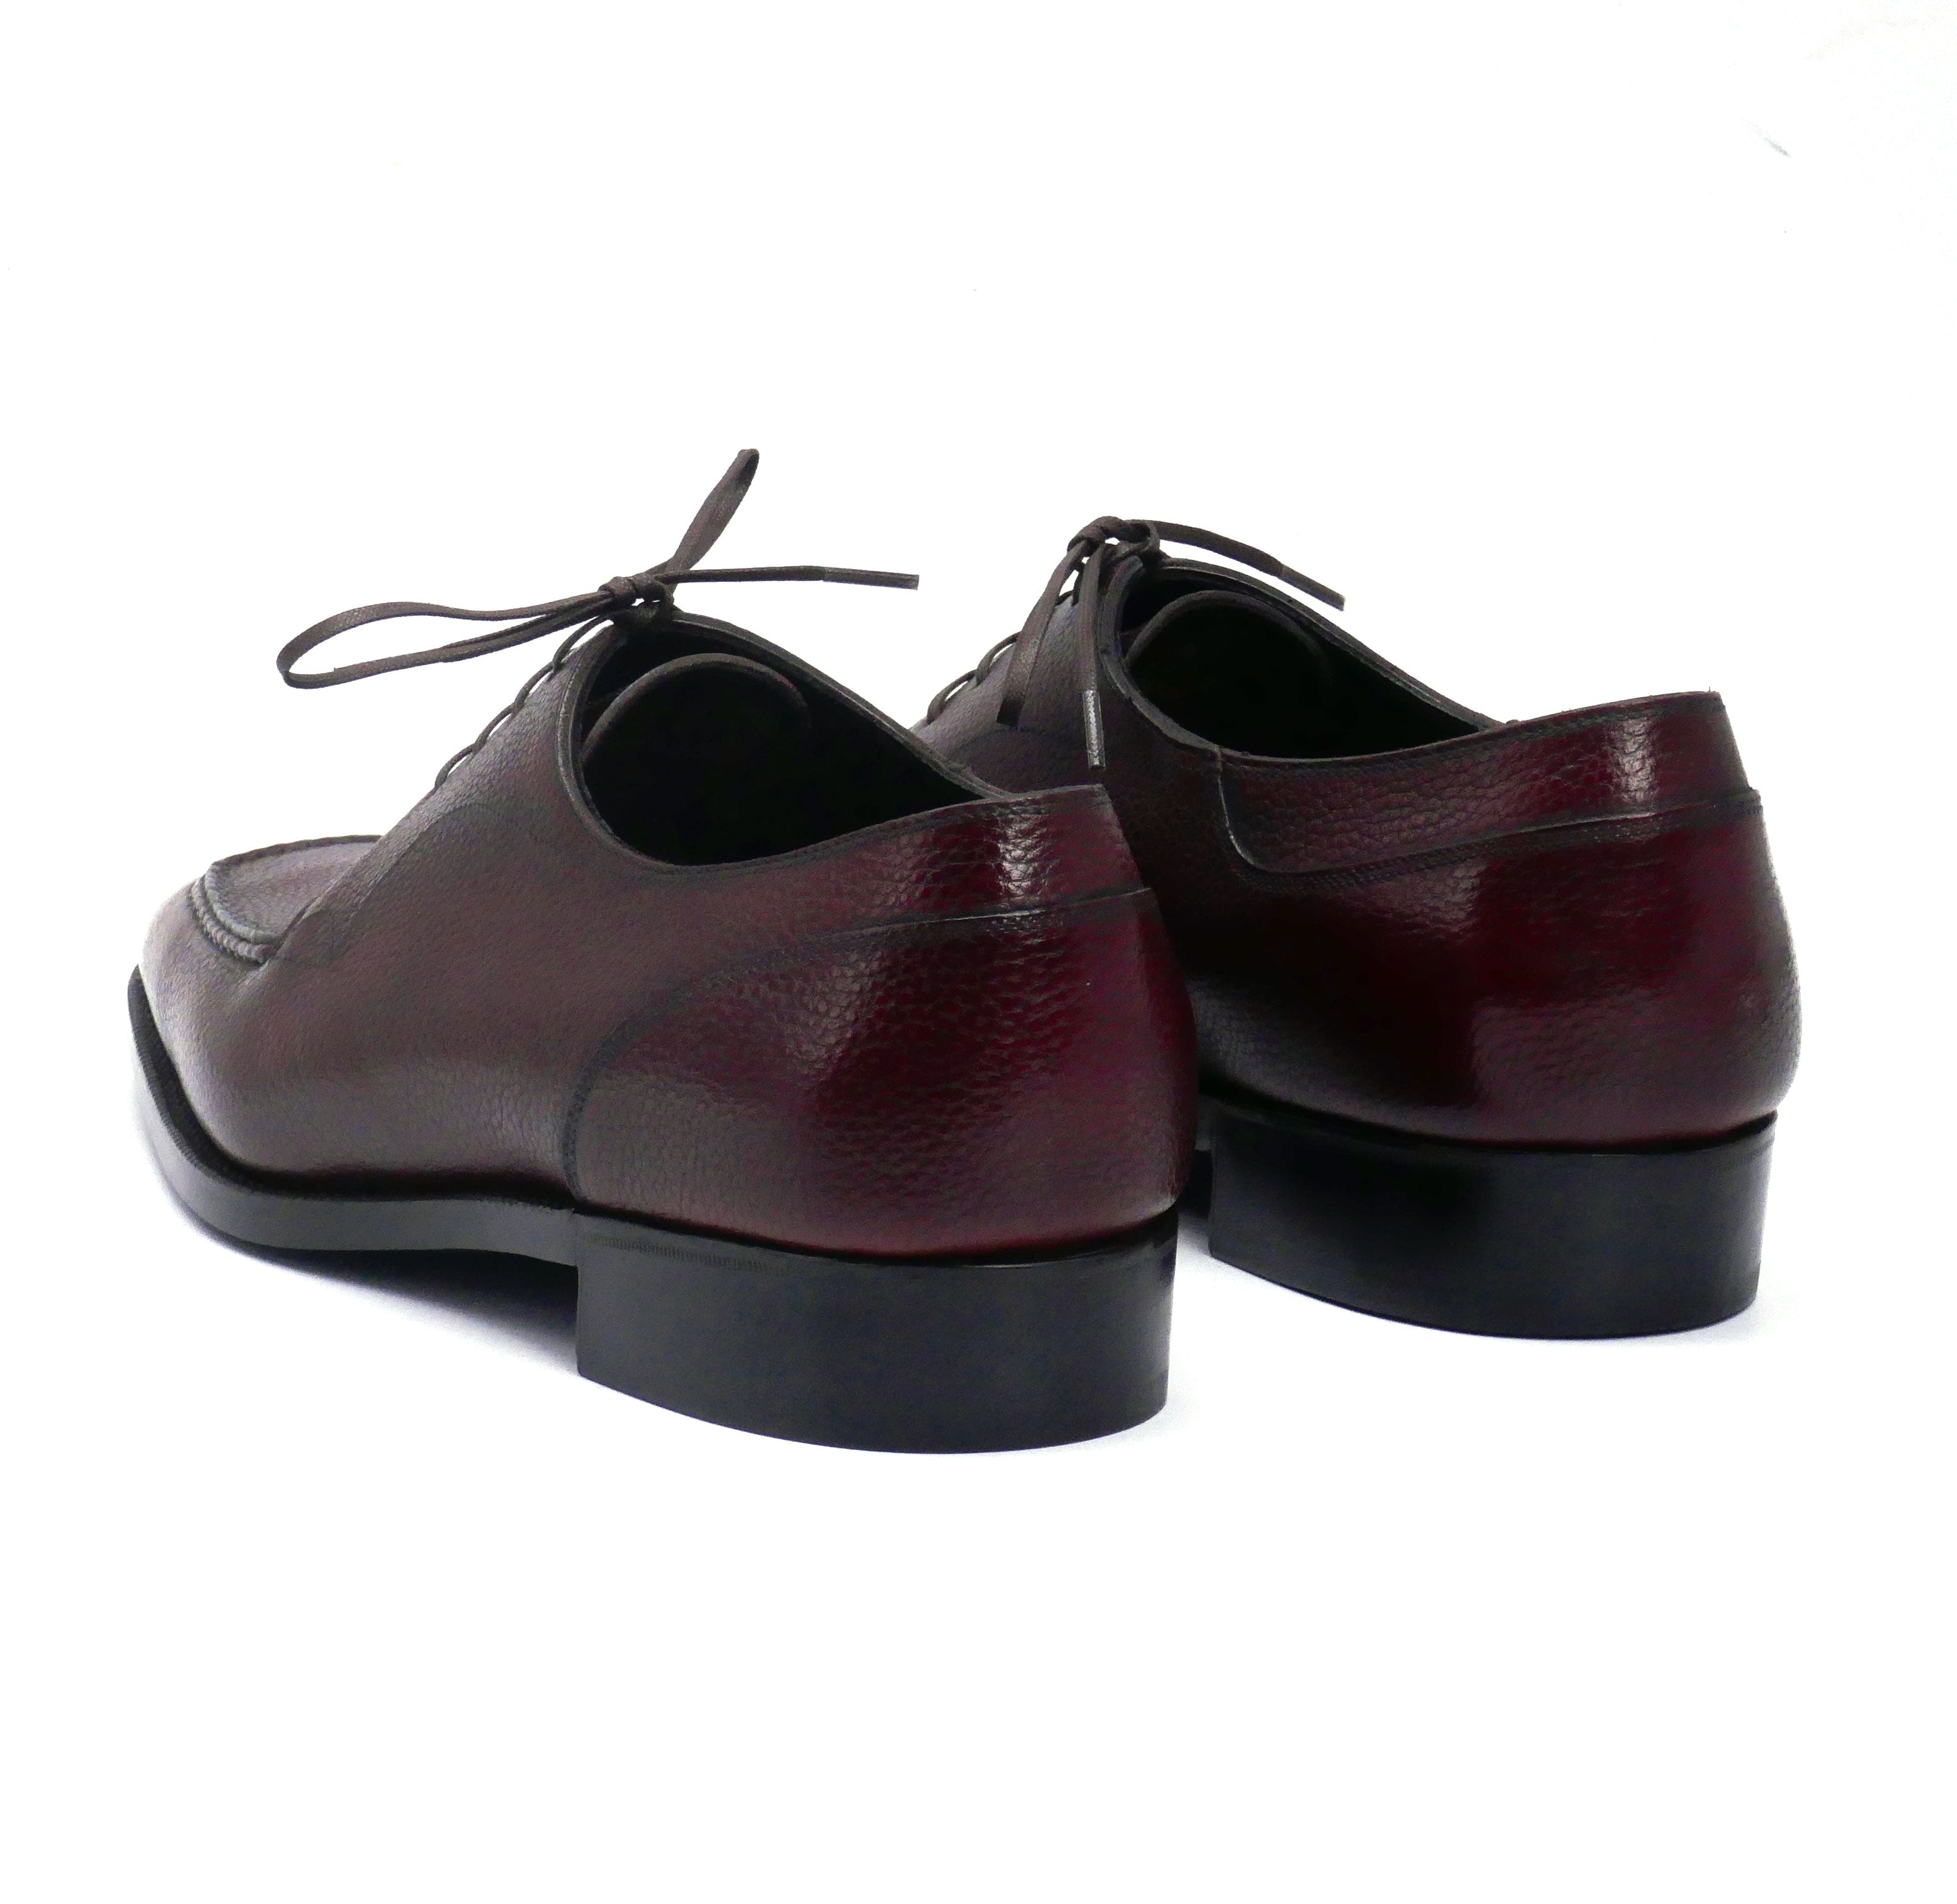 Tete Moc Toe Derby Shoe by Norman Vilalta Bespoke Shoemakers of Barcelona